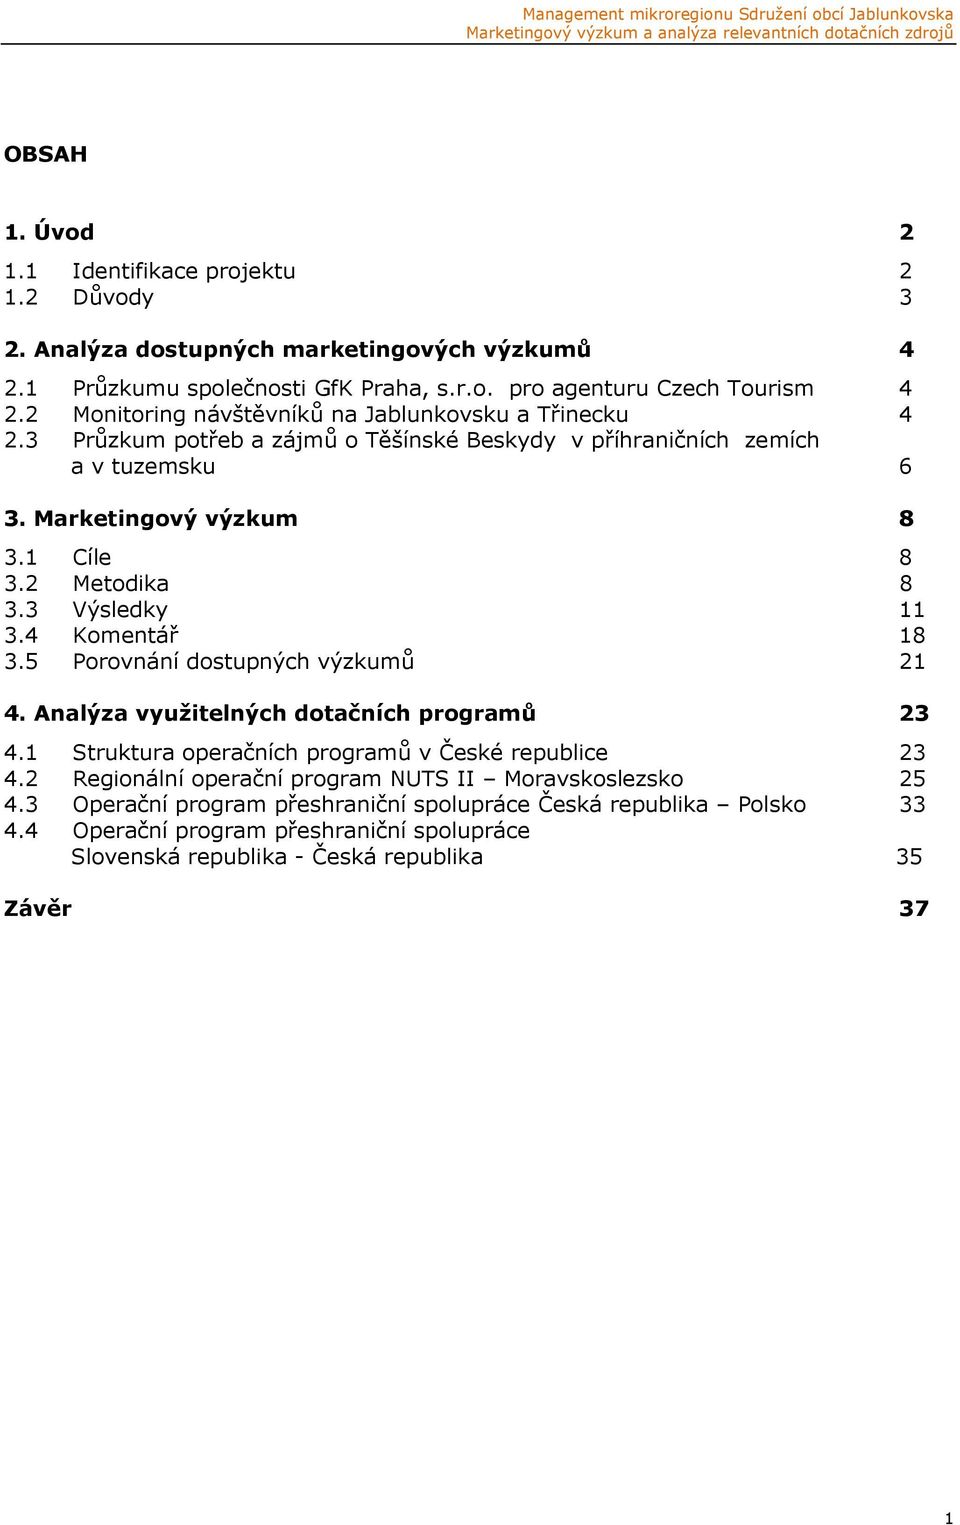 3 Výsledky 11 3.4 Komentář 18 3.5 Porovnání dostupných výzkumů 21 4. Analýza využitelných dotačních programů 23 4.1 Struktura operačních programů v České republice 23 4.